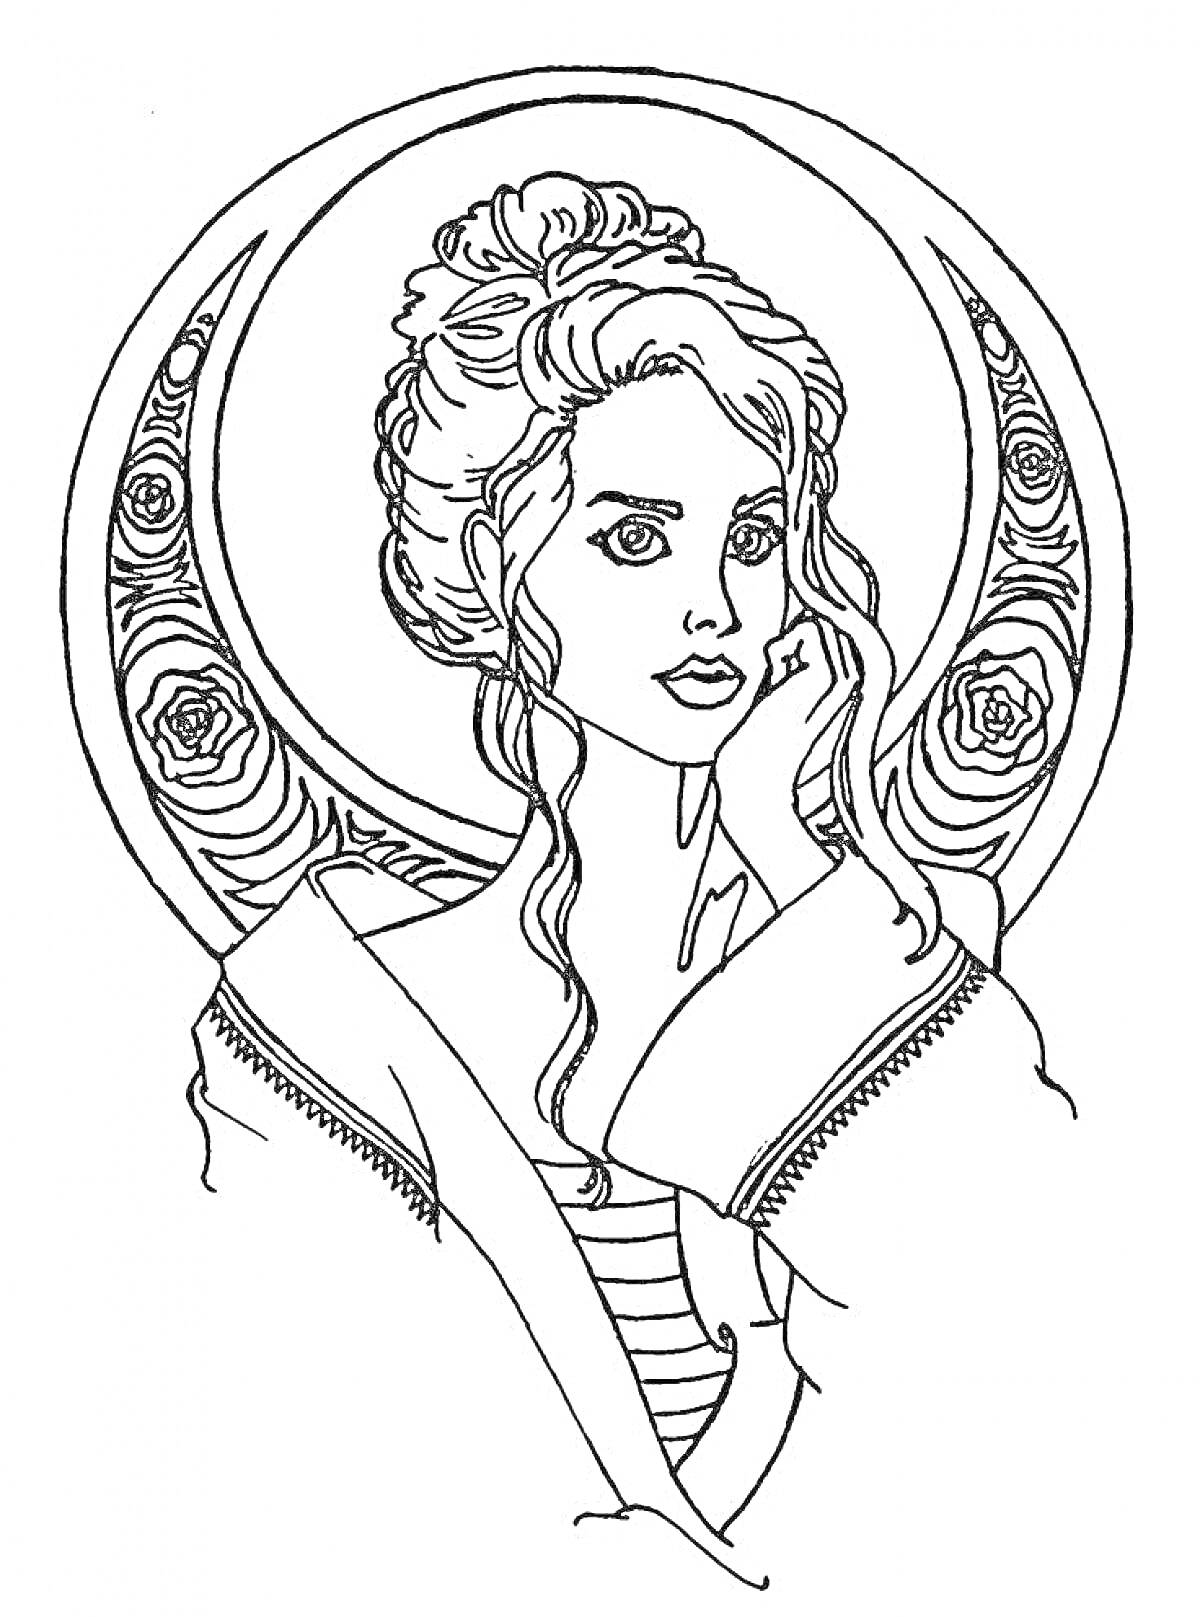 Раскраска Женщина с высоко забранными волосами и медитативным выражением лица на фоне круга с розами